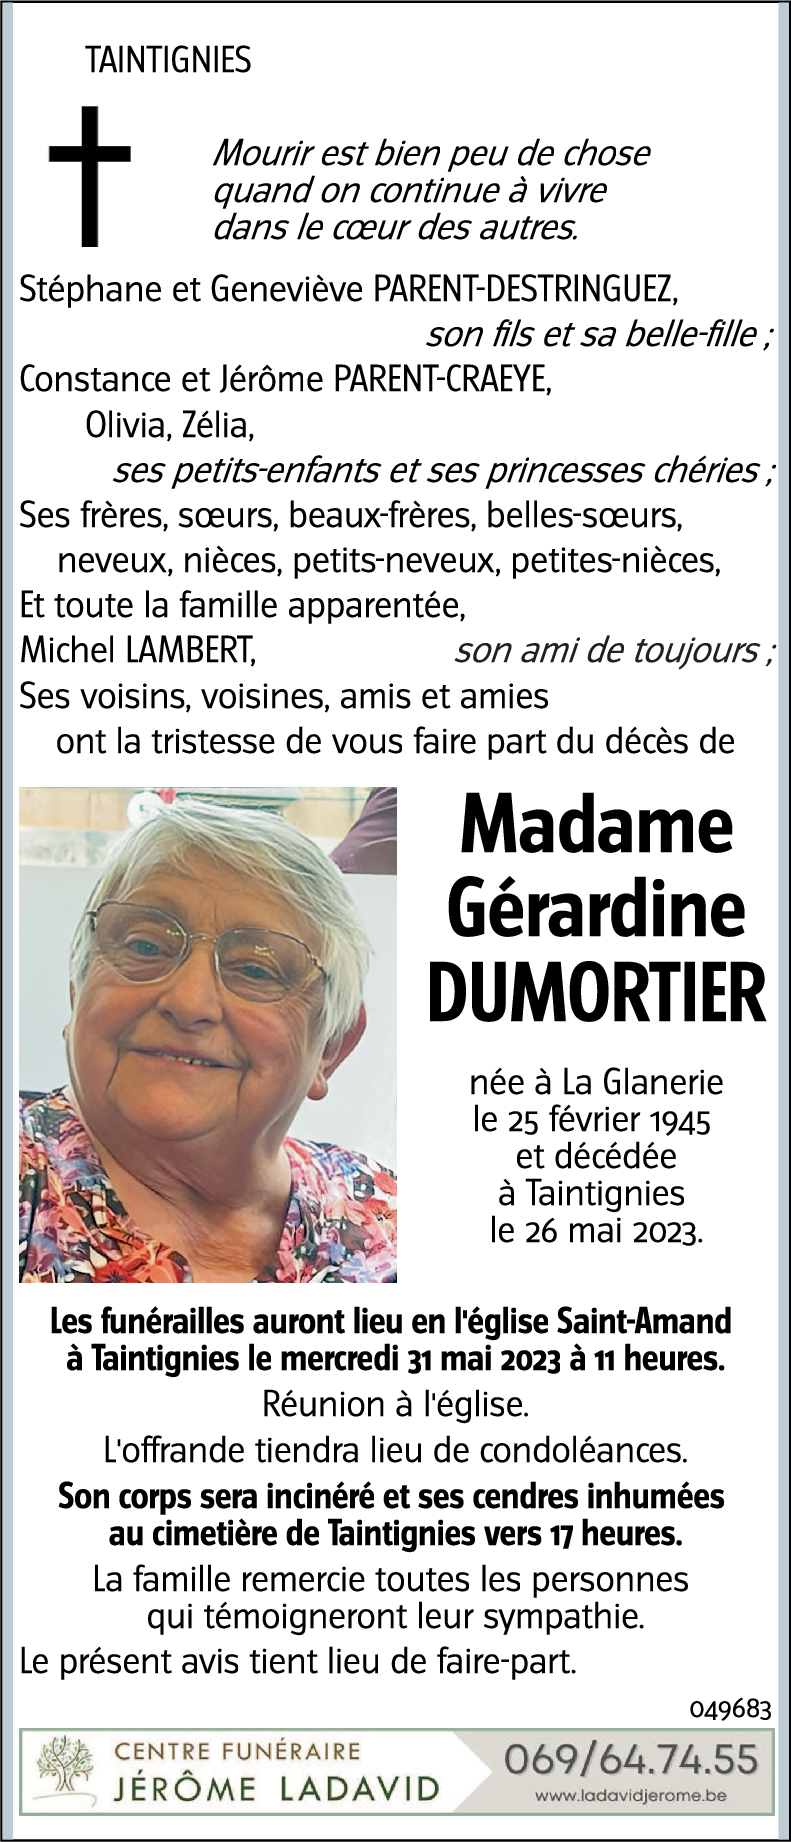 Gérardine DUMORTIER